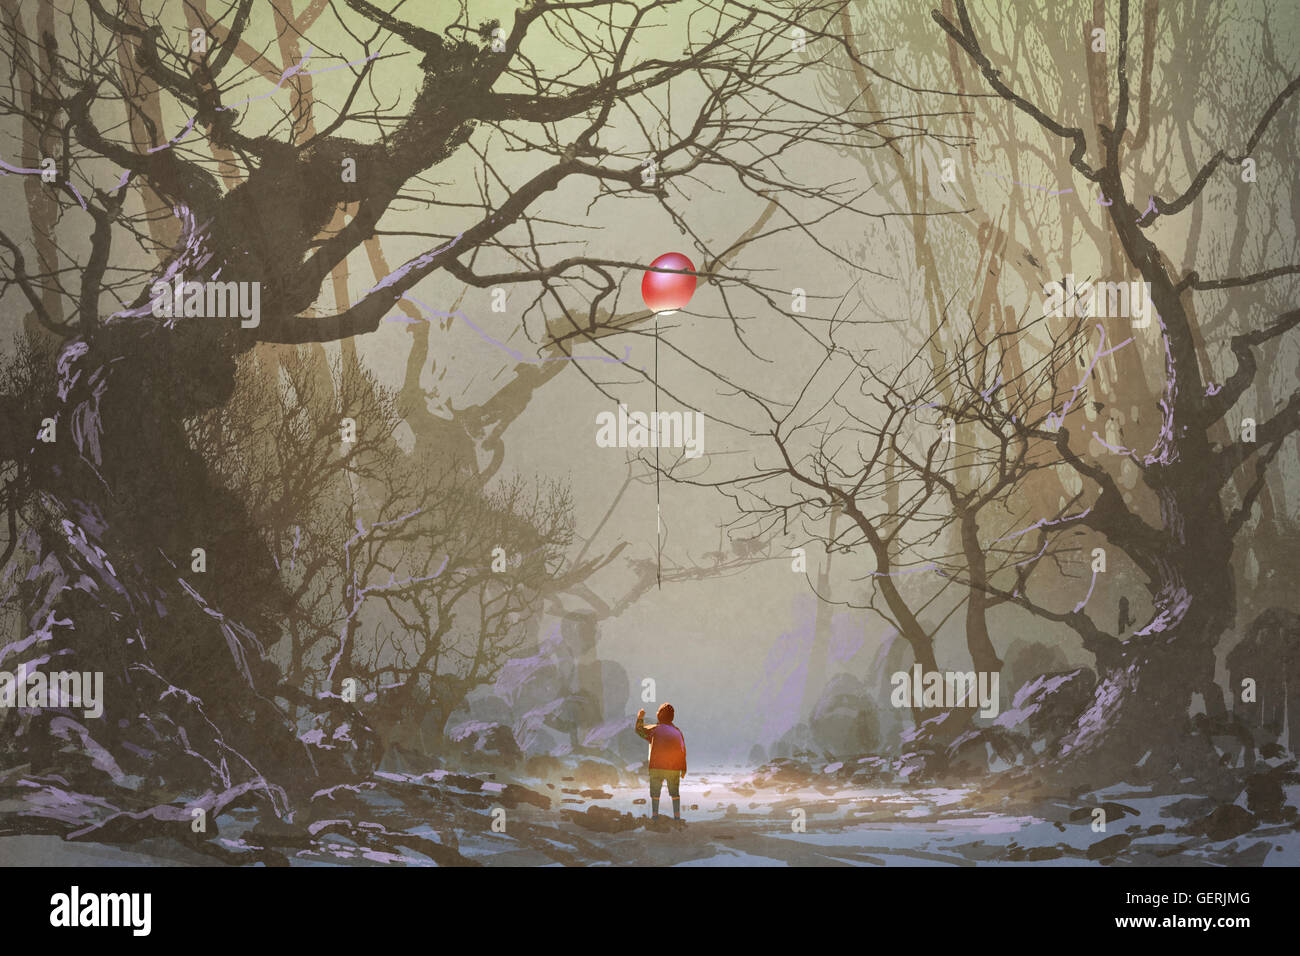 Boy looking up ballon rouge coincé dans une des branches d'arbre,seul dans forêt sombre,illustration,peinture numérique Banque D'Images